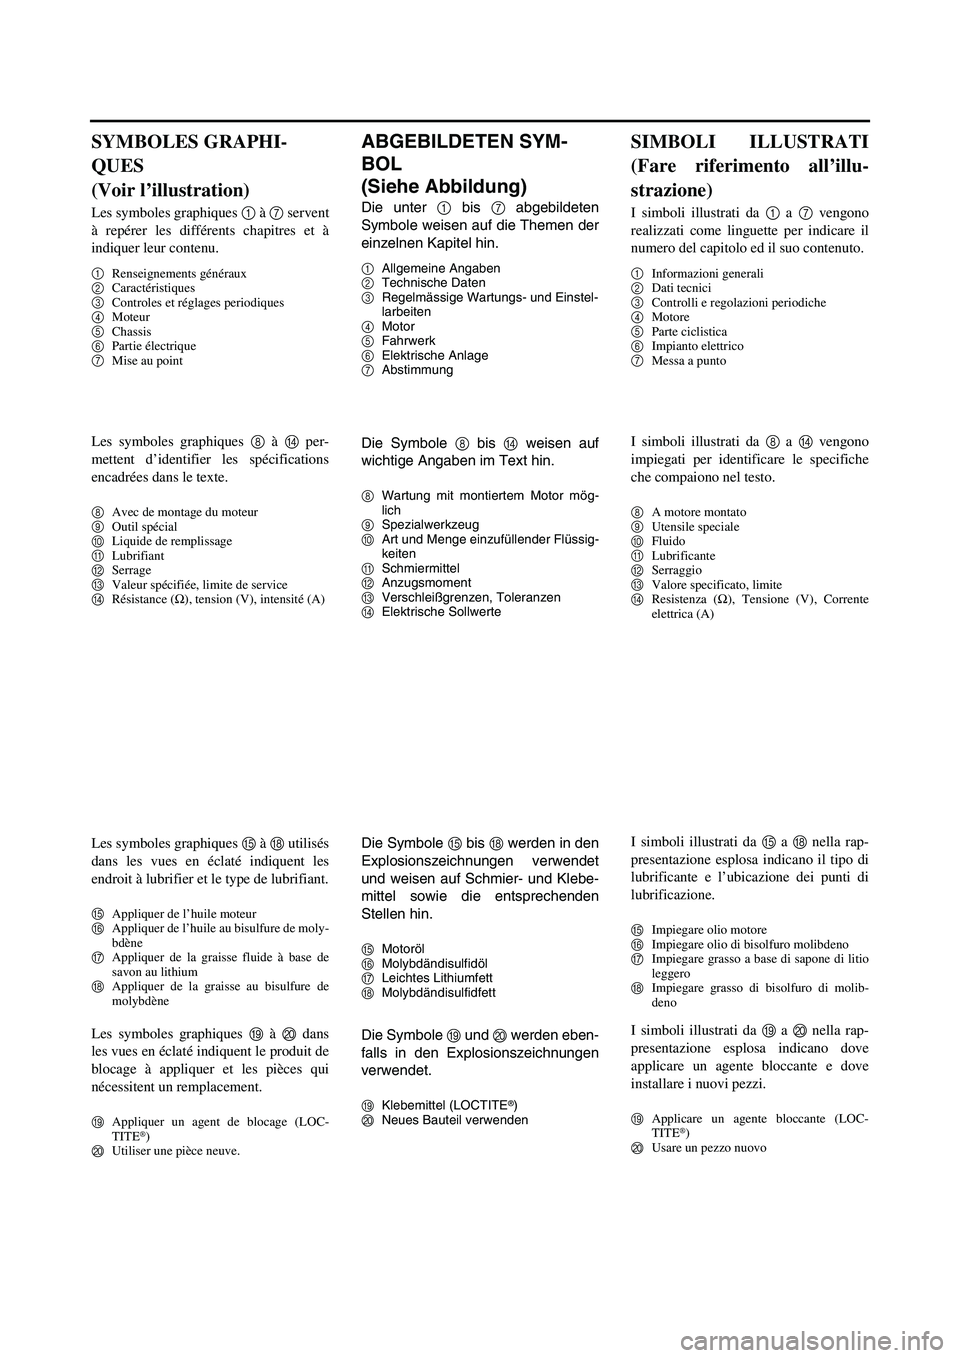 YAMAHA YZ250F 2007  Owners Manual ABGEBILDETEN SYM-
BOL 
(Siehe Abbildung)
Die unter 1 bis 7 abgebildeten
Symbole weisen auf die Themen der
einzelnen Kapitel hin.
1Allgemeine Angaben
2Technische Daten
3Regelmässige Wartungs- und Eins